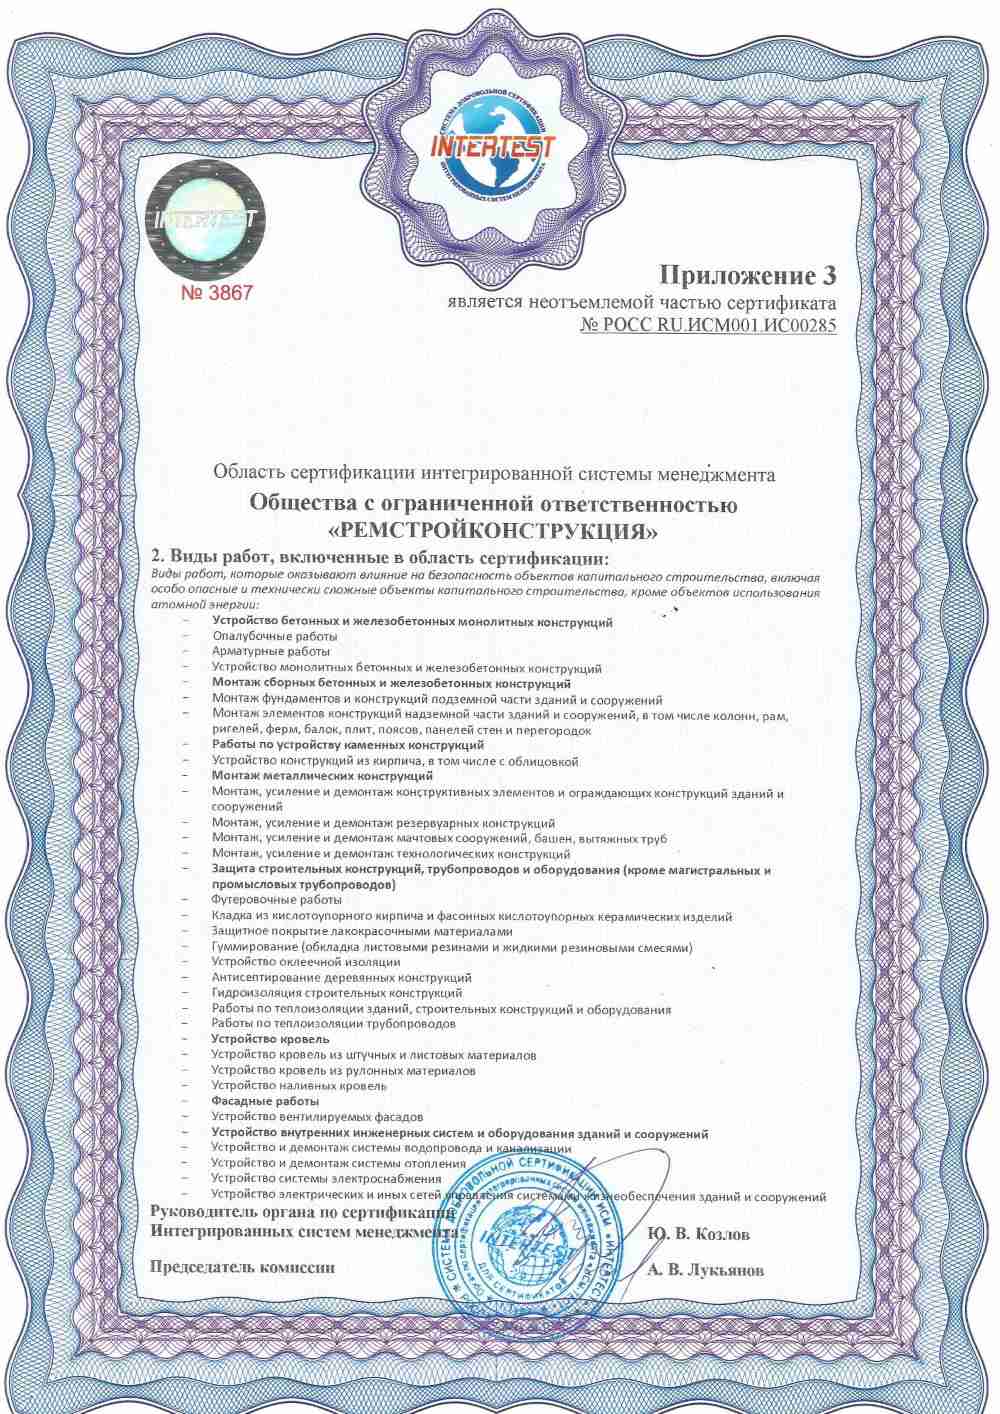 Приложение 3 к сертификату ISO 9001 ИСМ